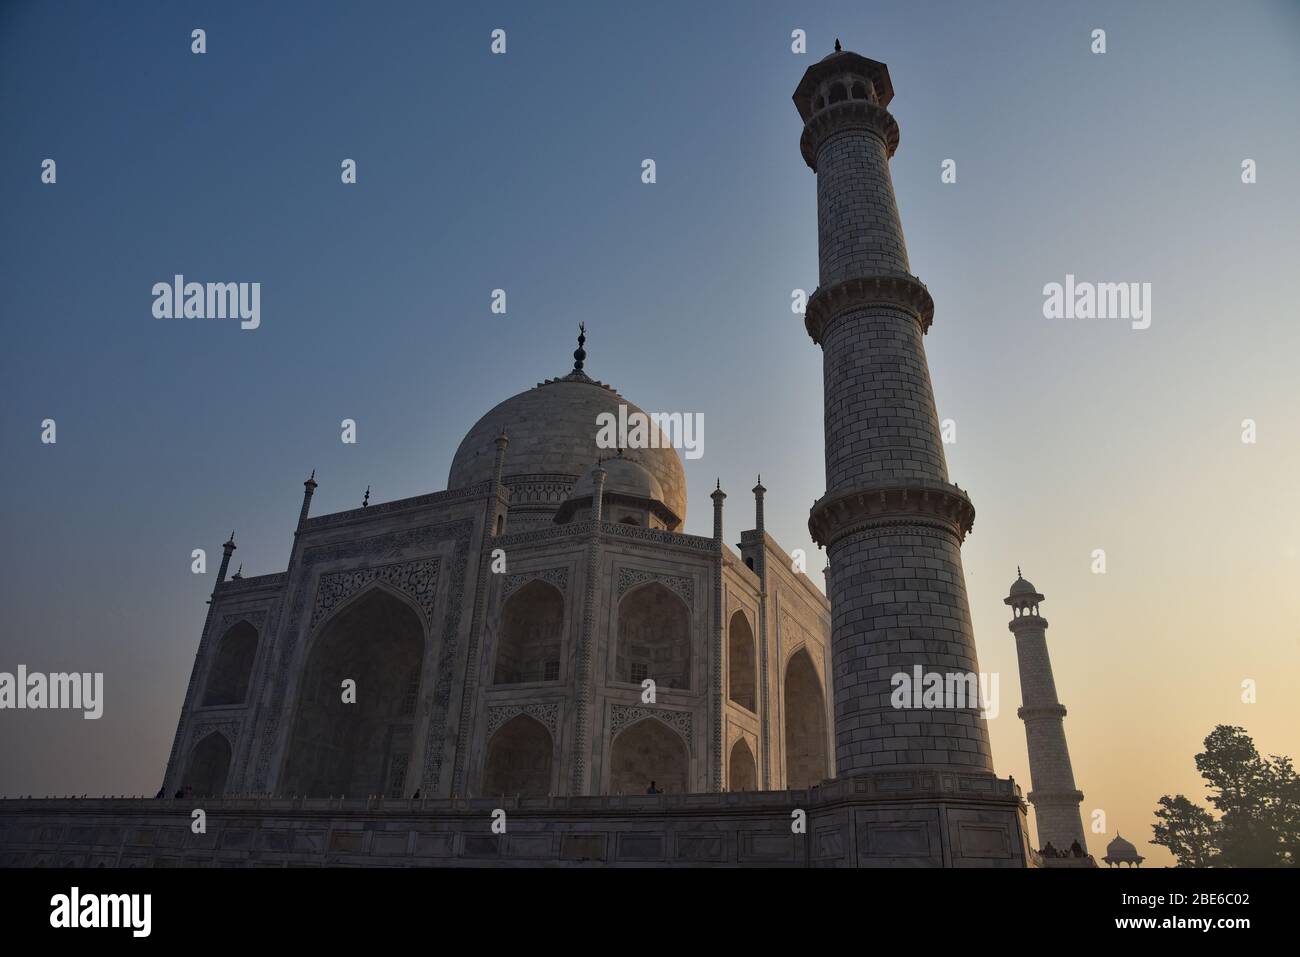 Amanecer en el Taj Mahal. El mausoleo de mármol blanco marfil tardó 12 años en construirse y fue terminado en 1643, Agra, India Central, Asia. Foto de stock